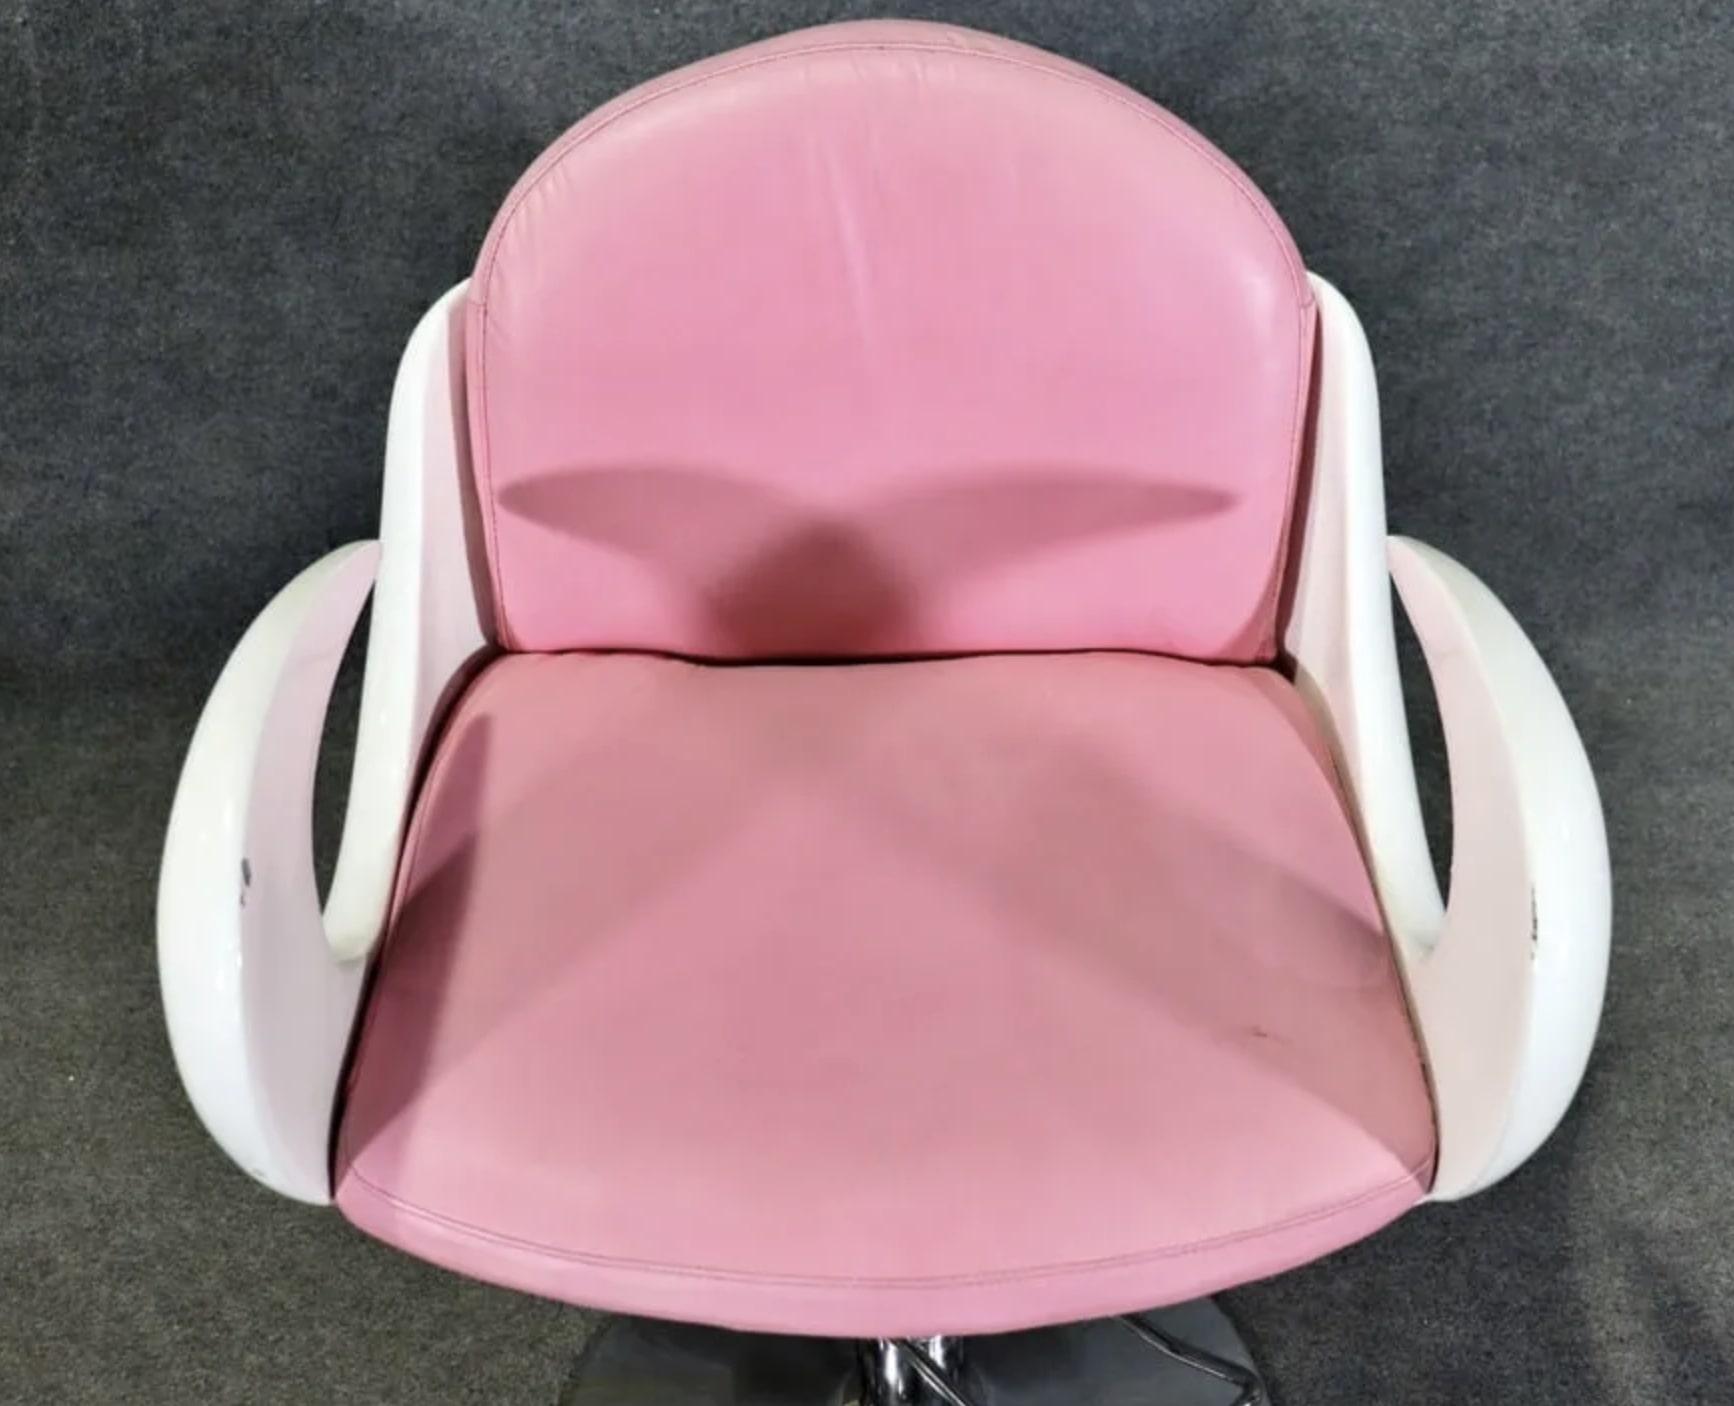 Rare fauteuil de barbier en blanc et rose. Bras courbés et base en métal poli.
Veuillez confirmer le lieu NY ou NJ